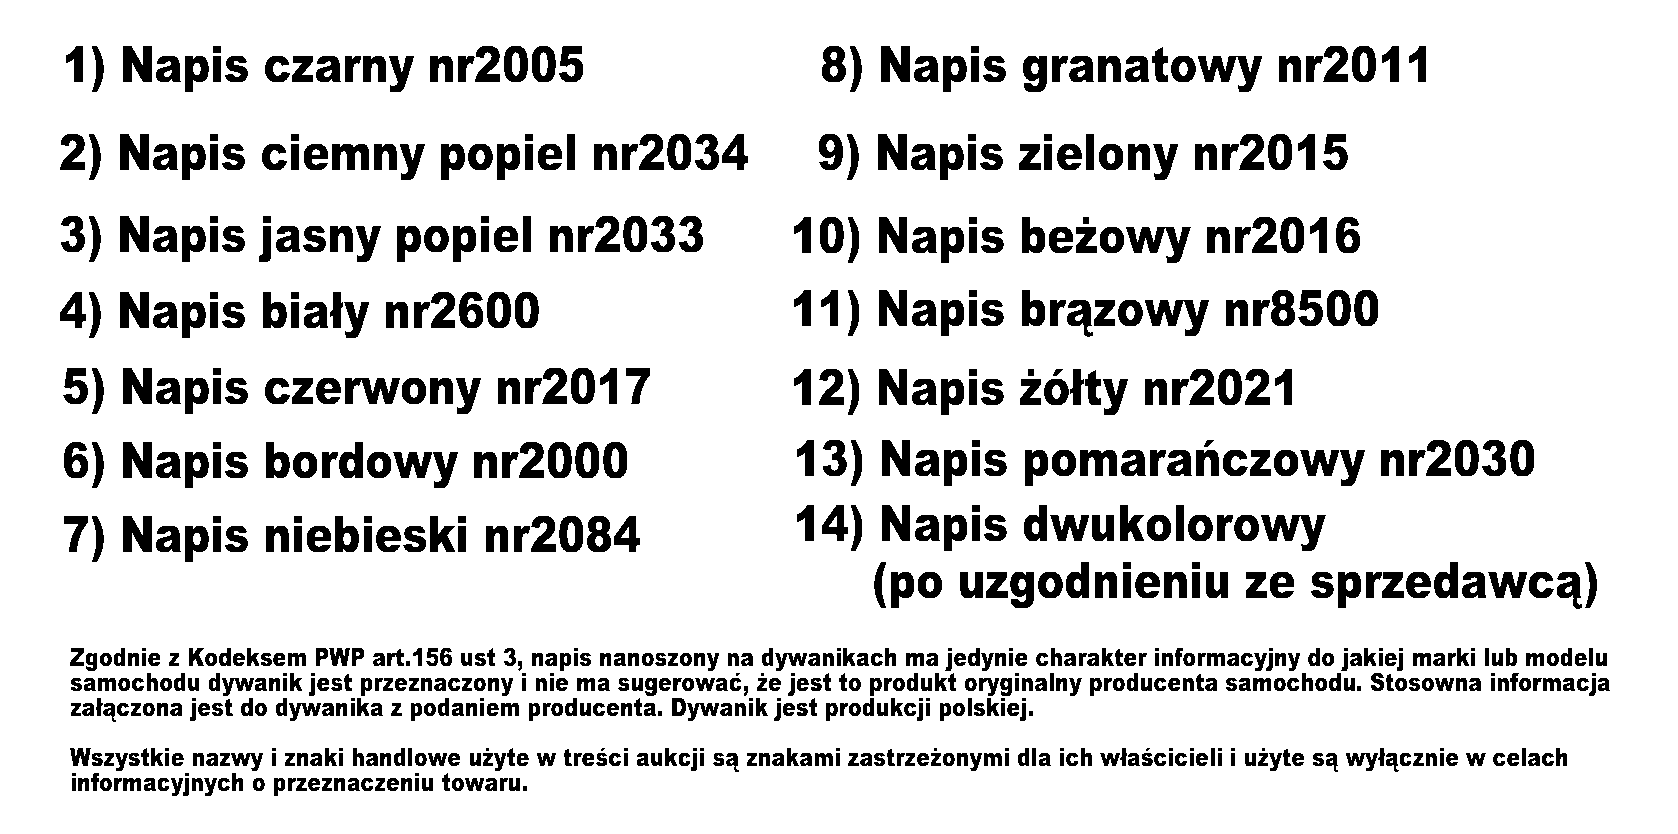 http://www.max-dywanik.nazwa.pl/Wzorniki%2027.11.2010r/Numery%20katologowe%20napisow%20flok.gif